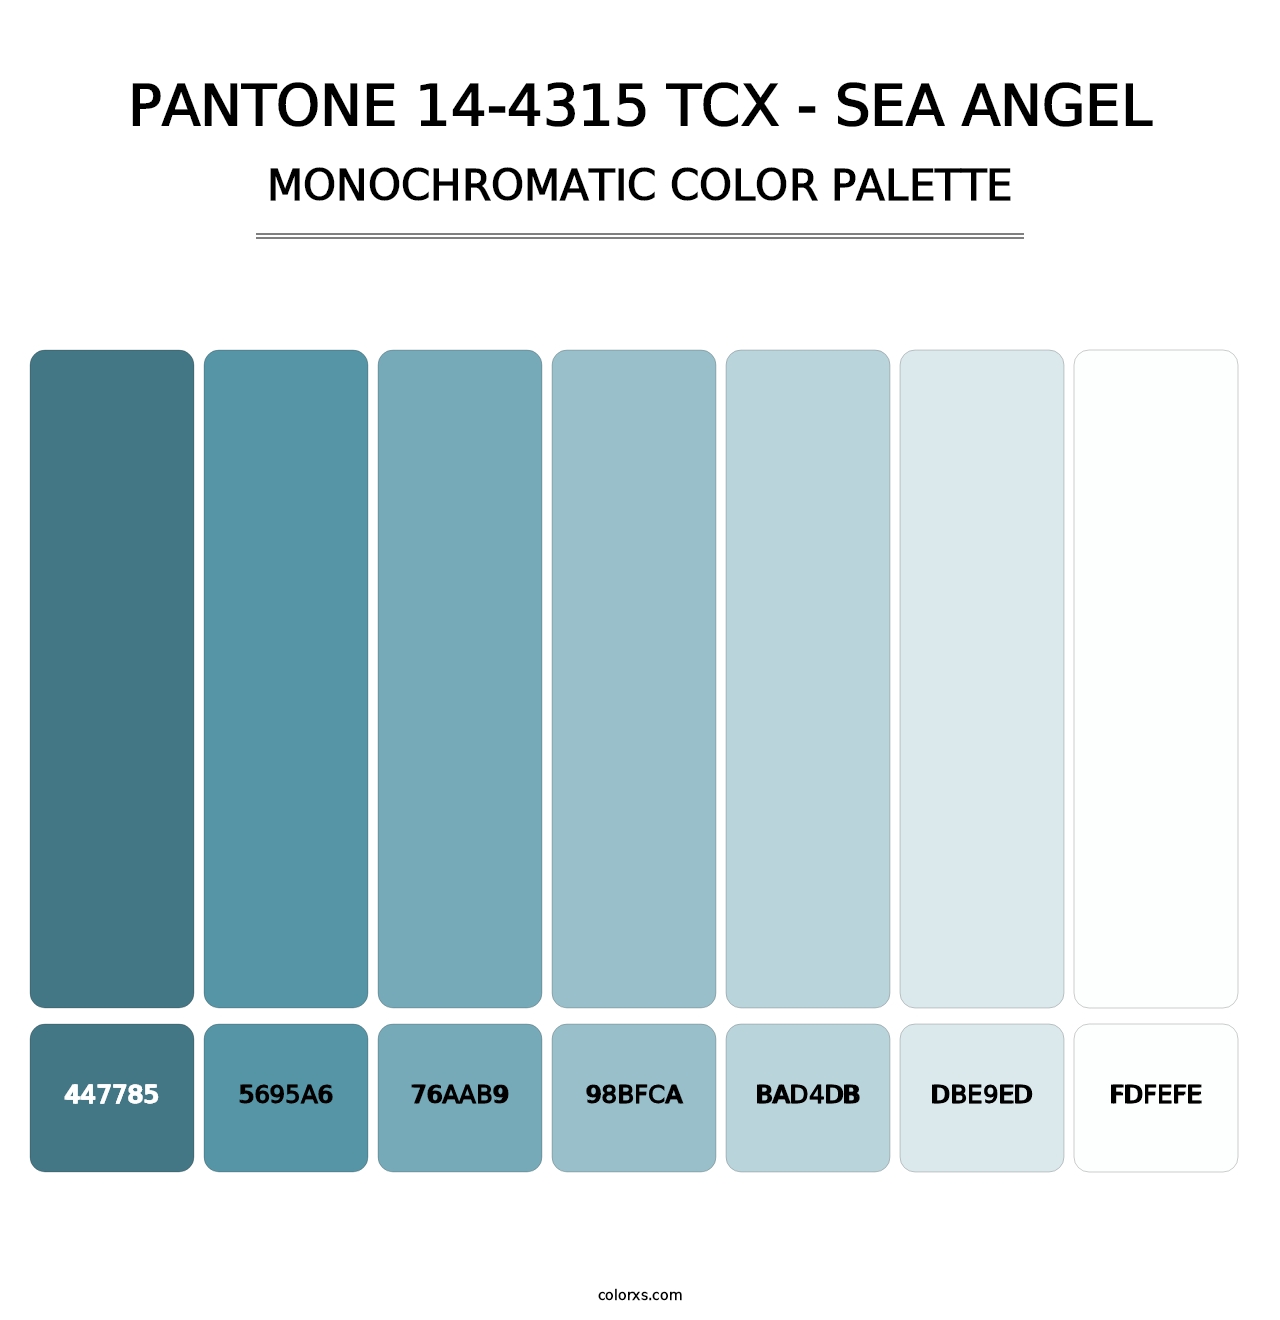 PANTONE 14-4315 TCX - Sea Angel - Monochromatic Color Palette